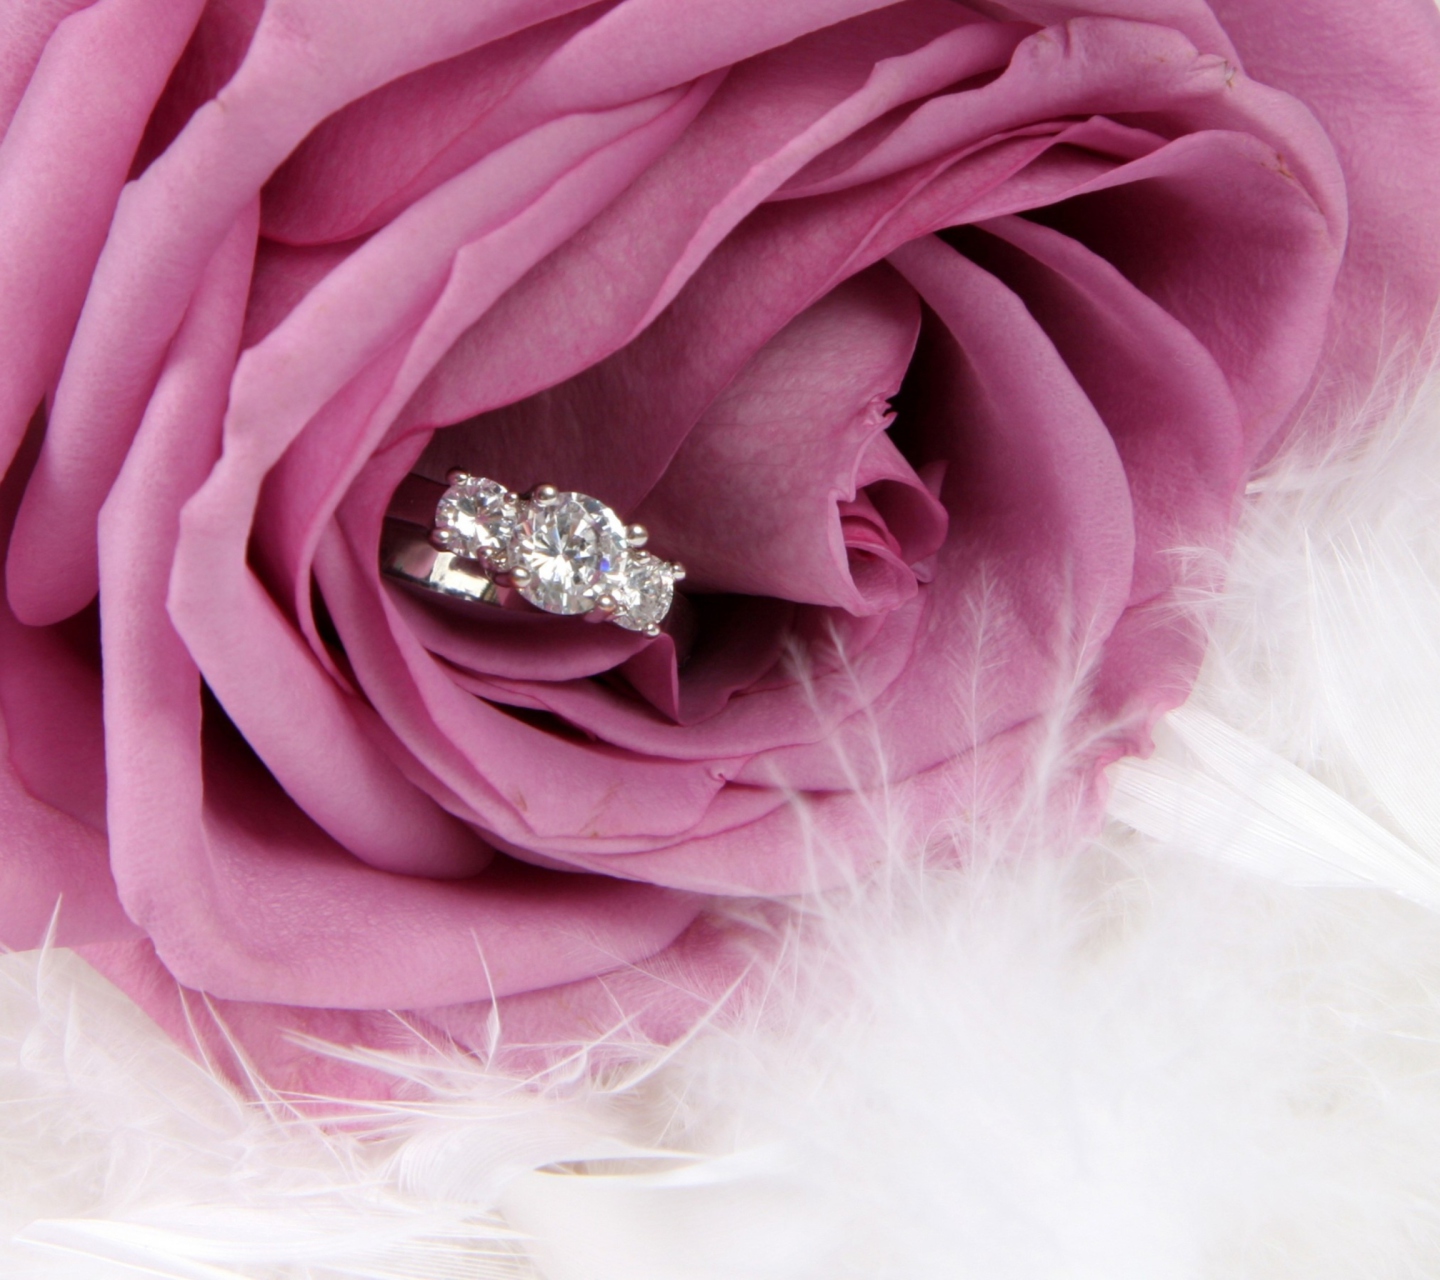 Engagement Ring In Pink Rose screenshot #1 1440x1280